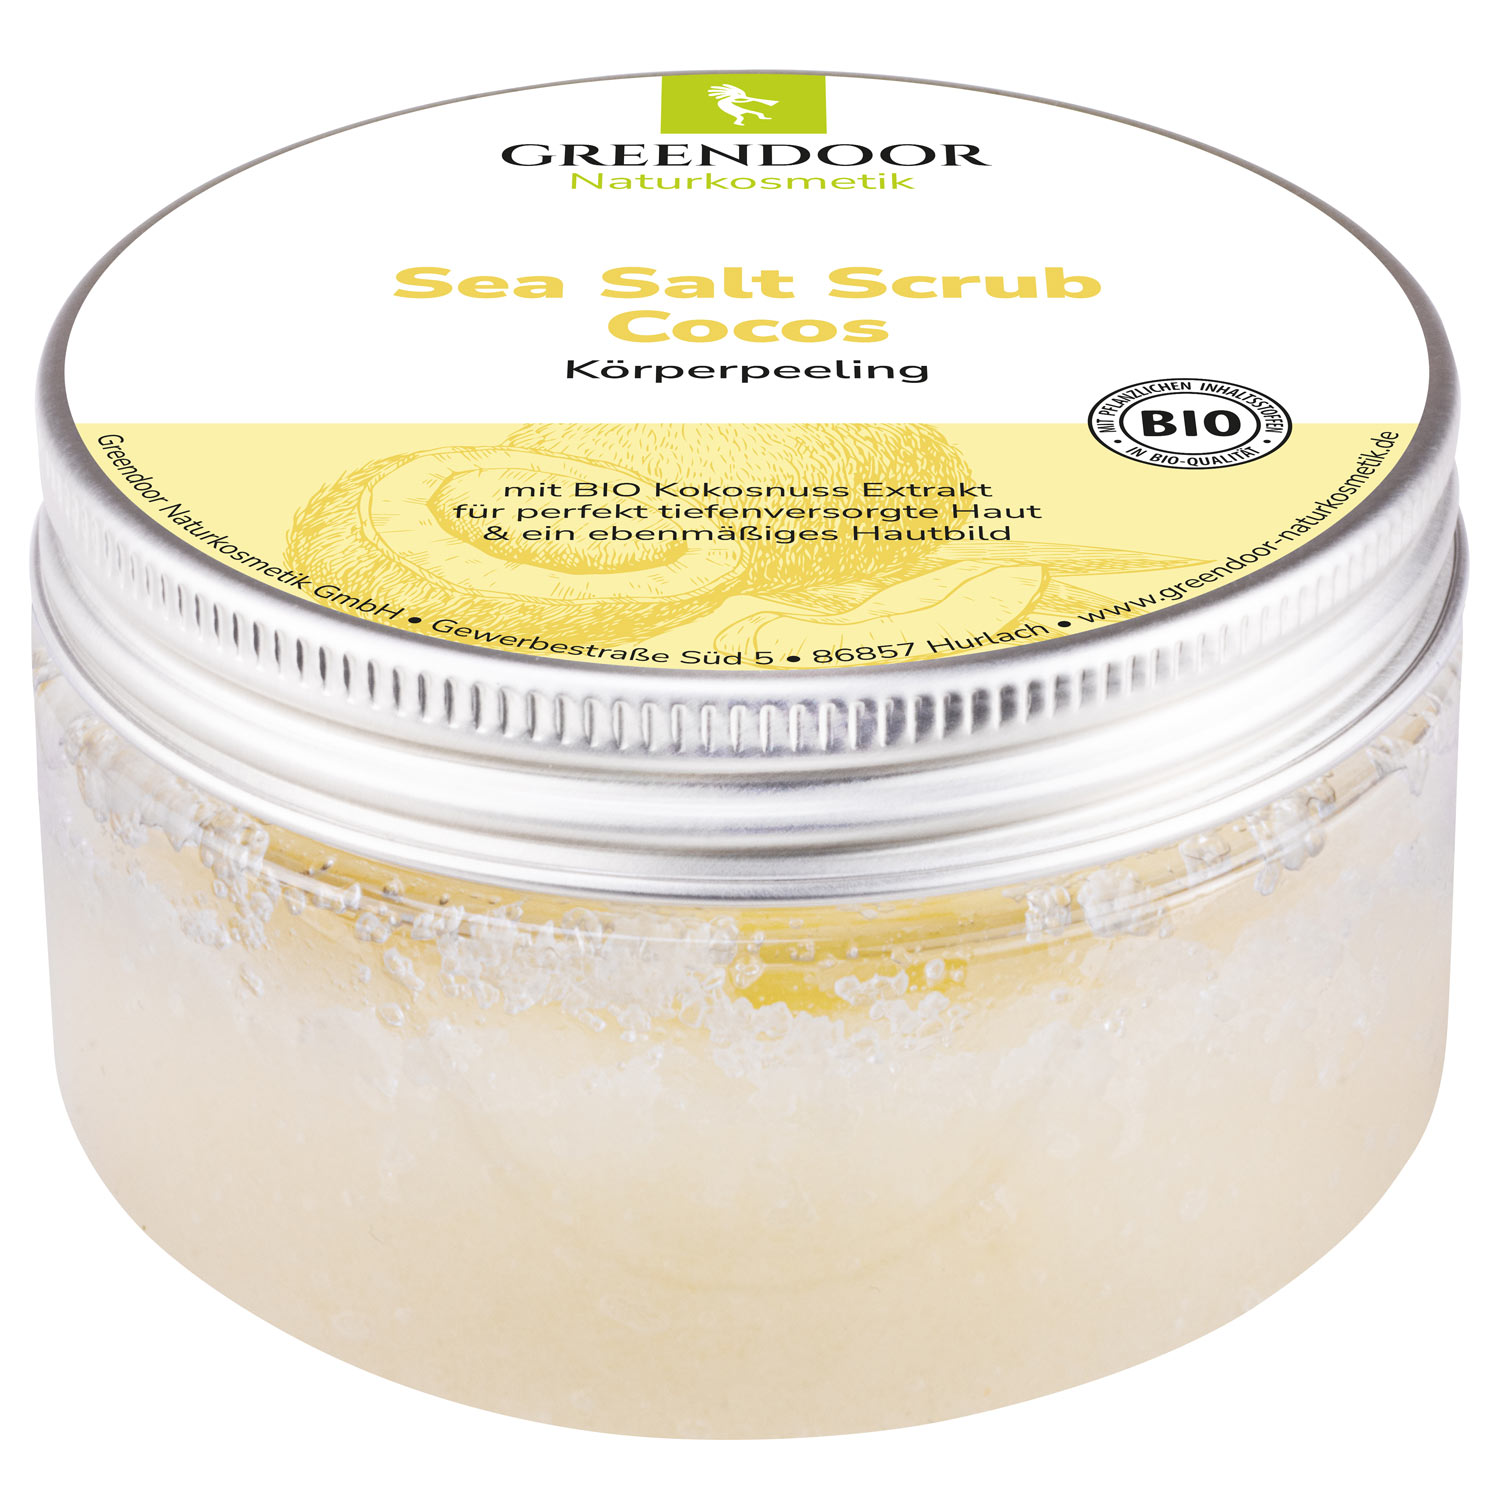 Sea Salt Scrub Cocos, veganes Körperpeeling ohne Mikroplastik, 280g